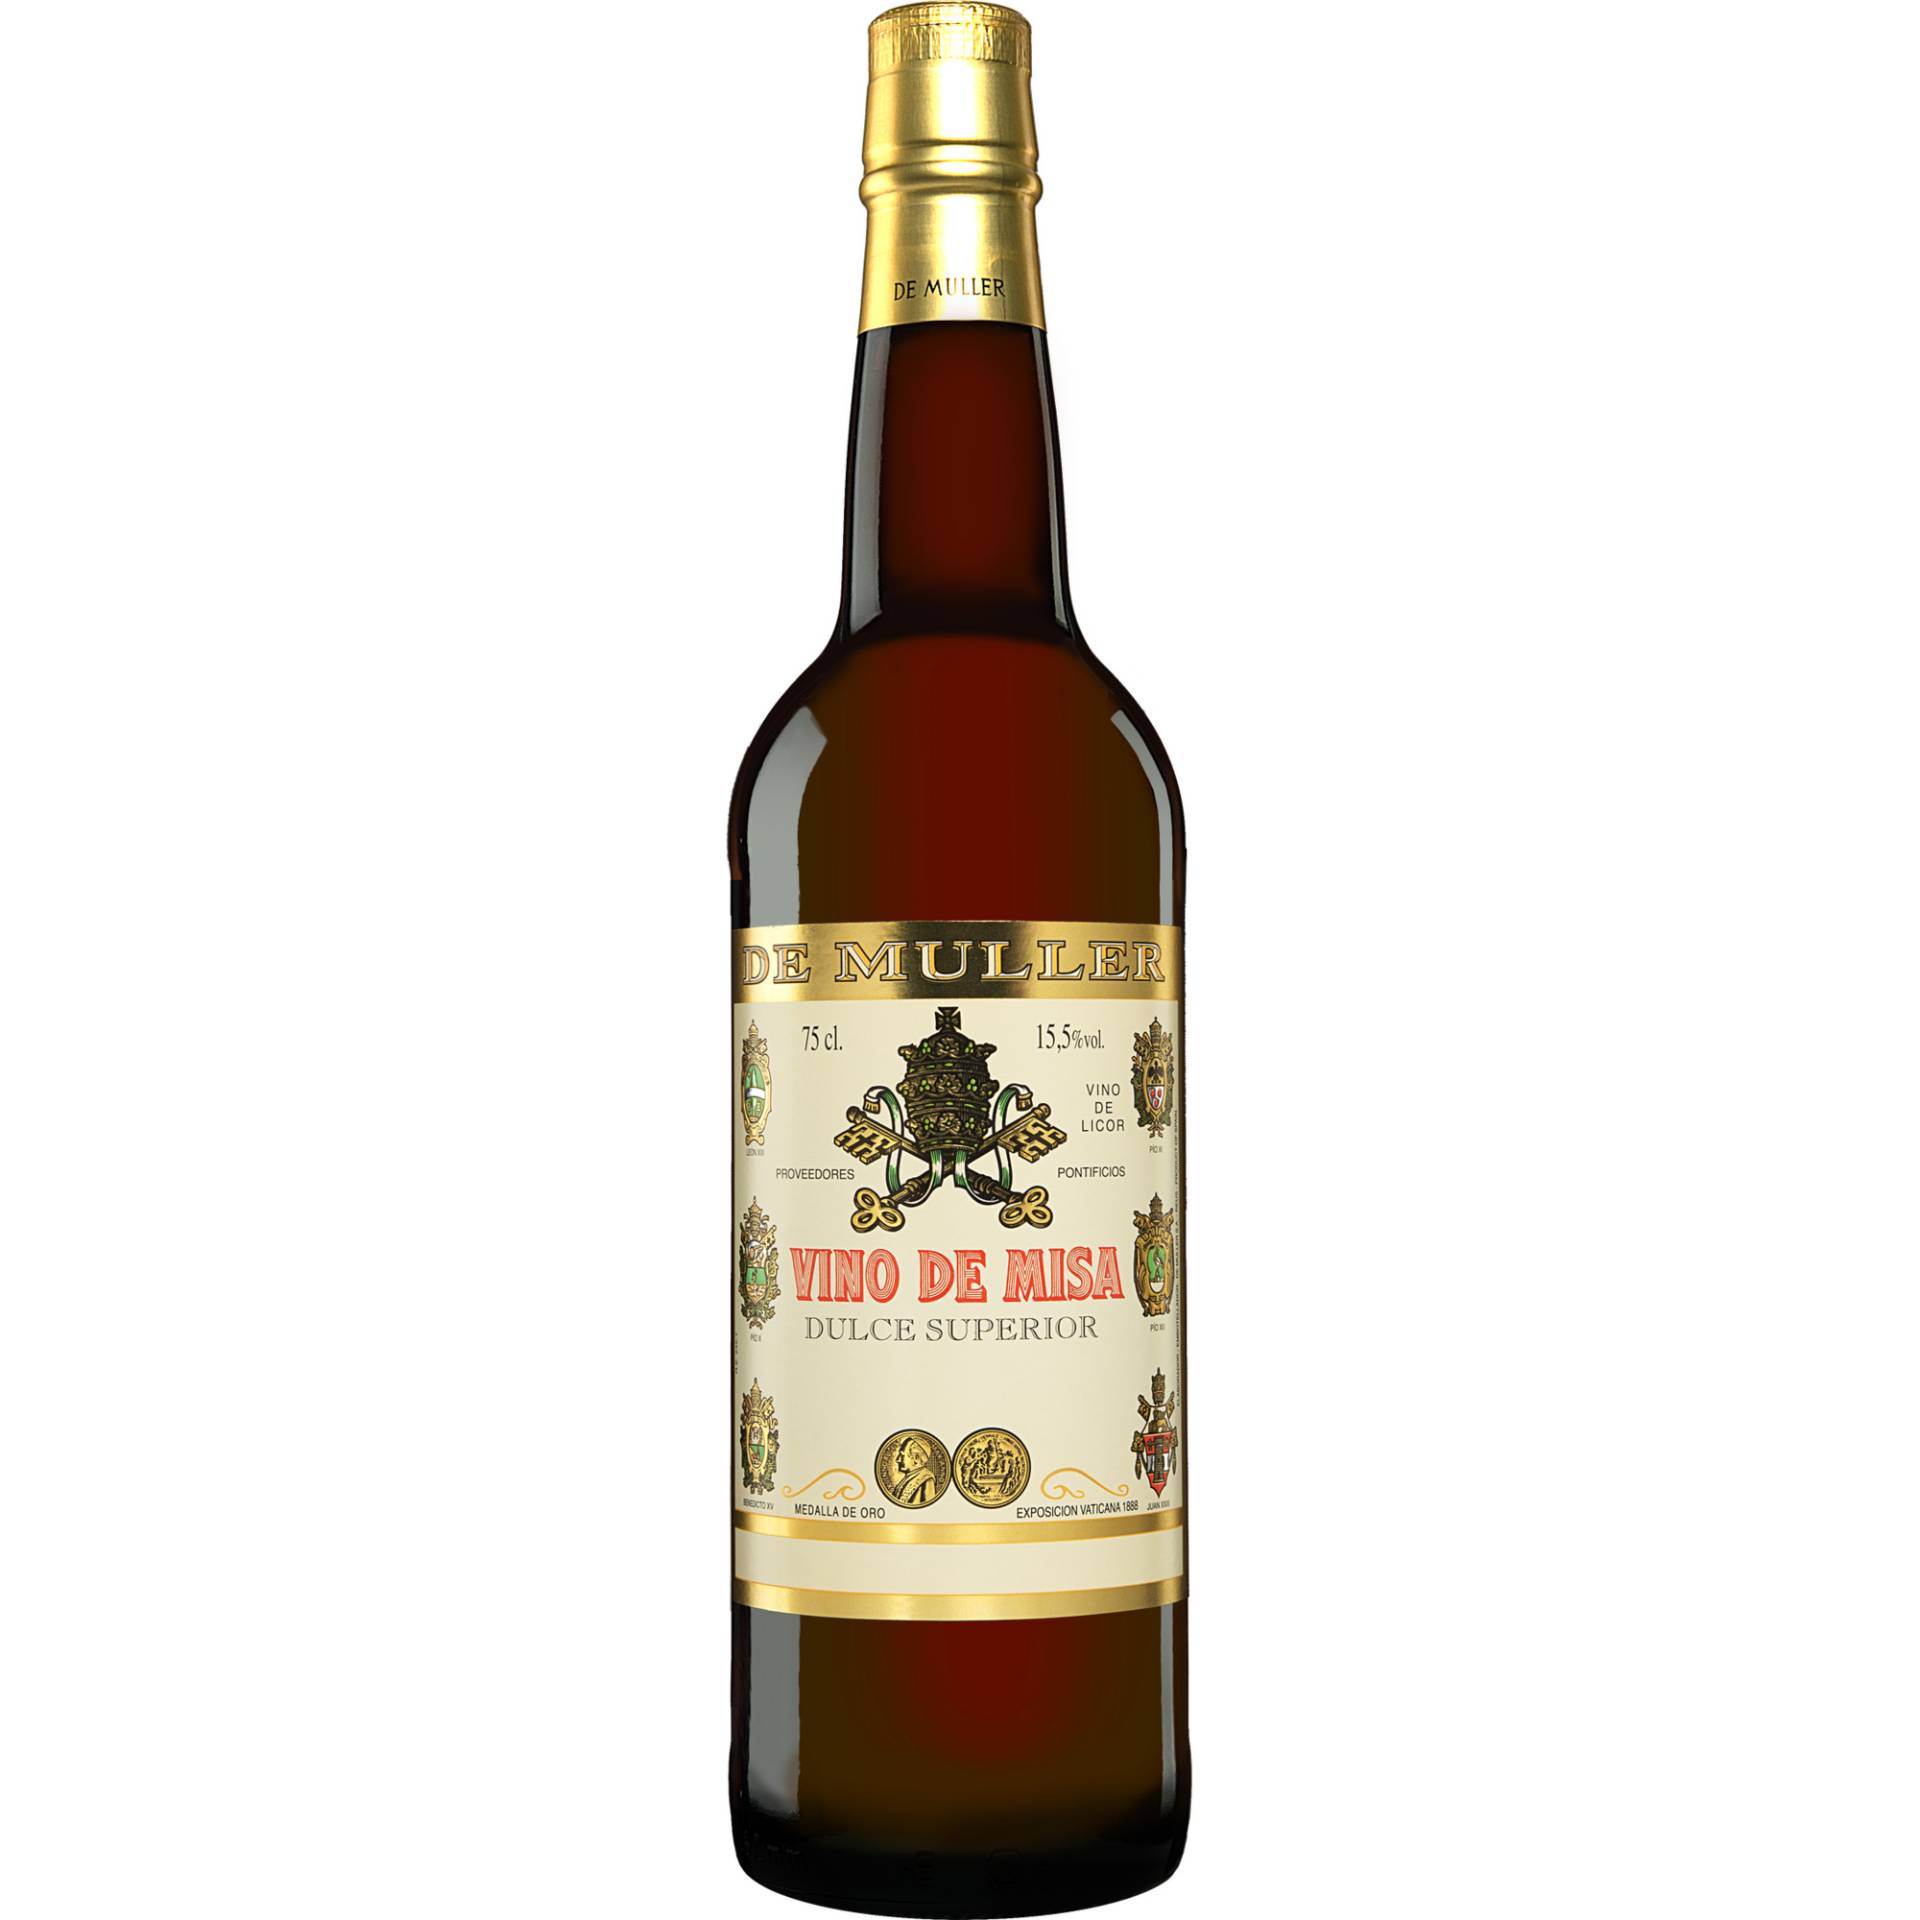 De Muller »Vino de Misa« Dulce Superior  0.75L 15.5% Vol. aus Spanien von De Muller